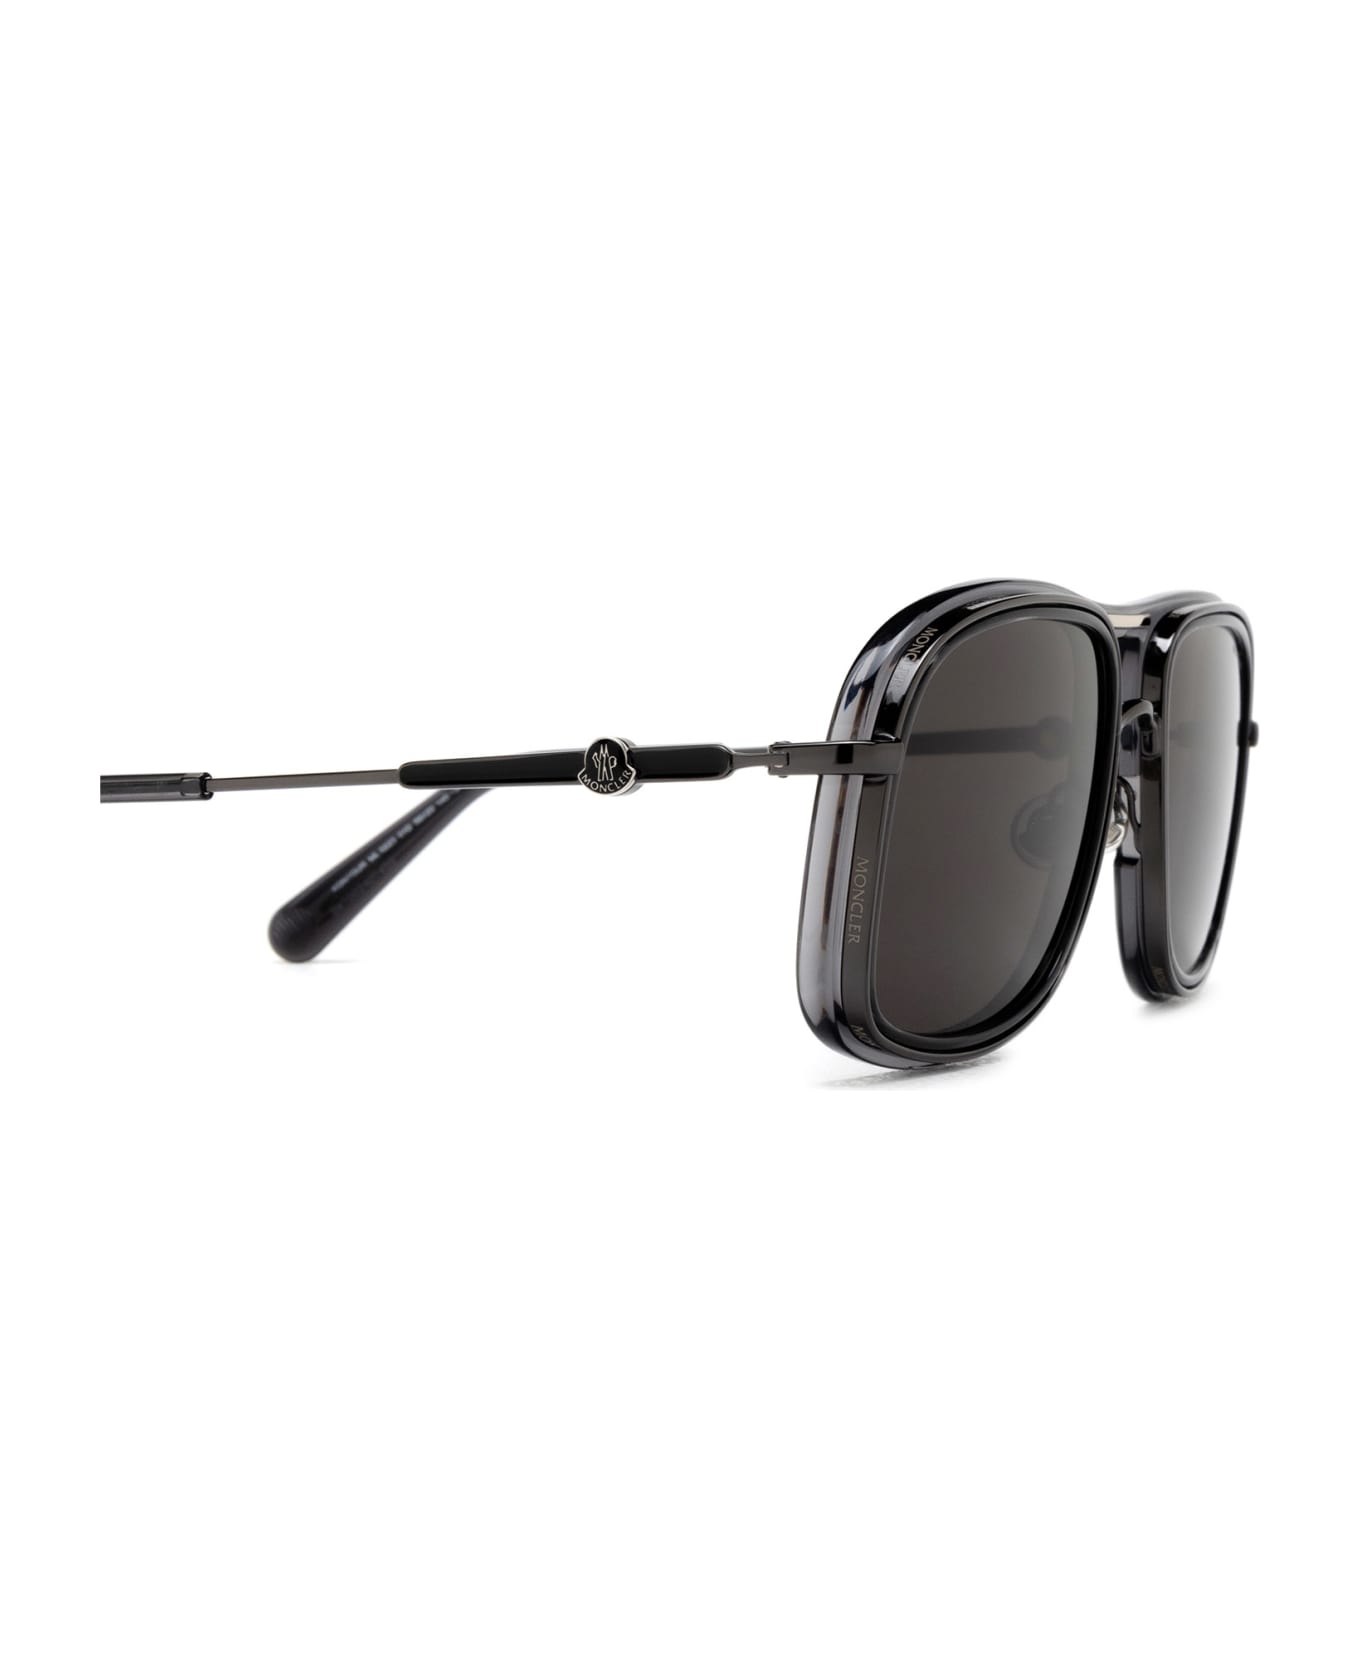 Moncler Eyewear Ml0223 Shiny Black Sunglasses - Shiny Black